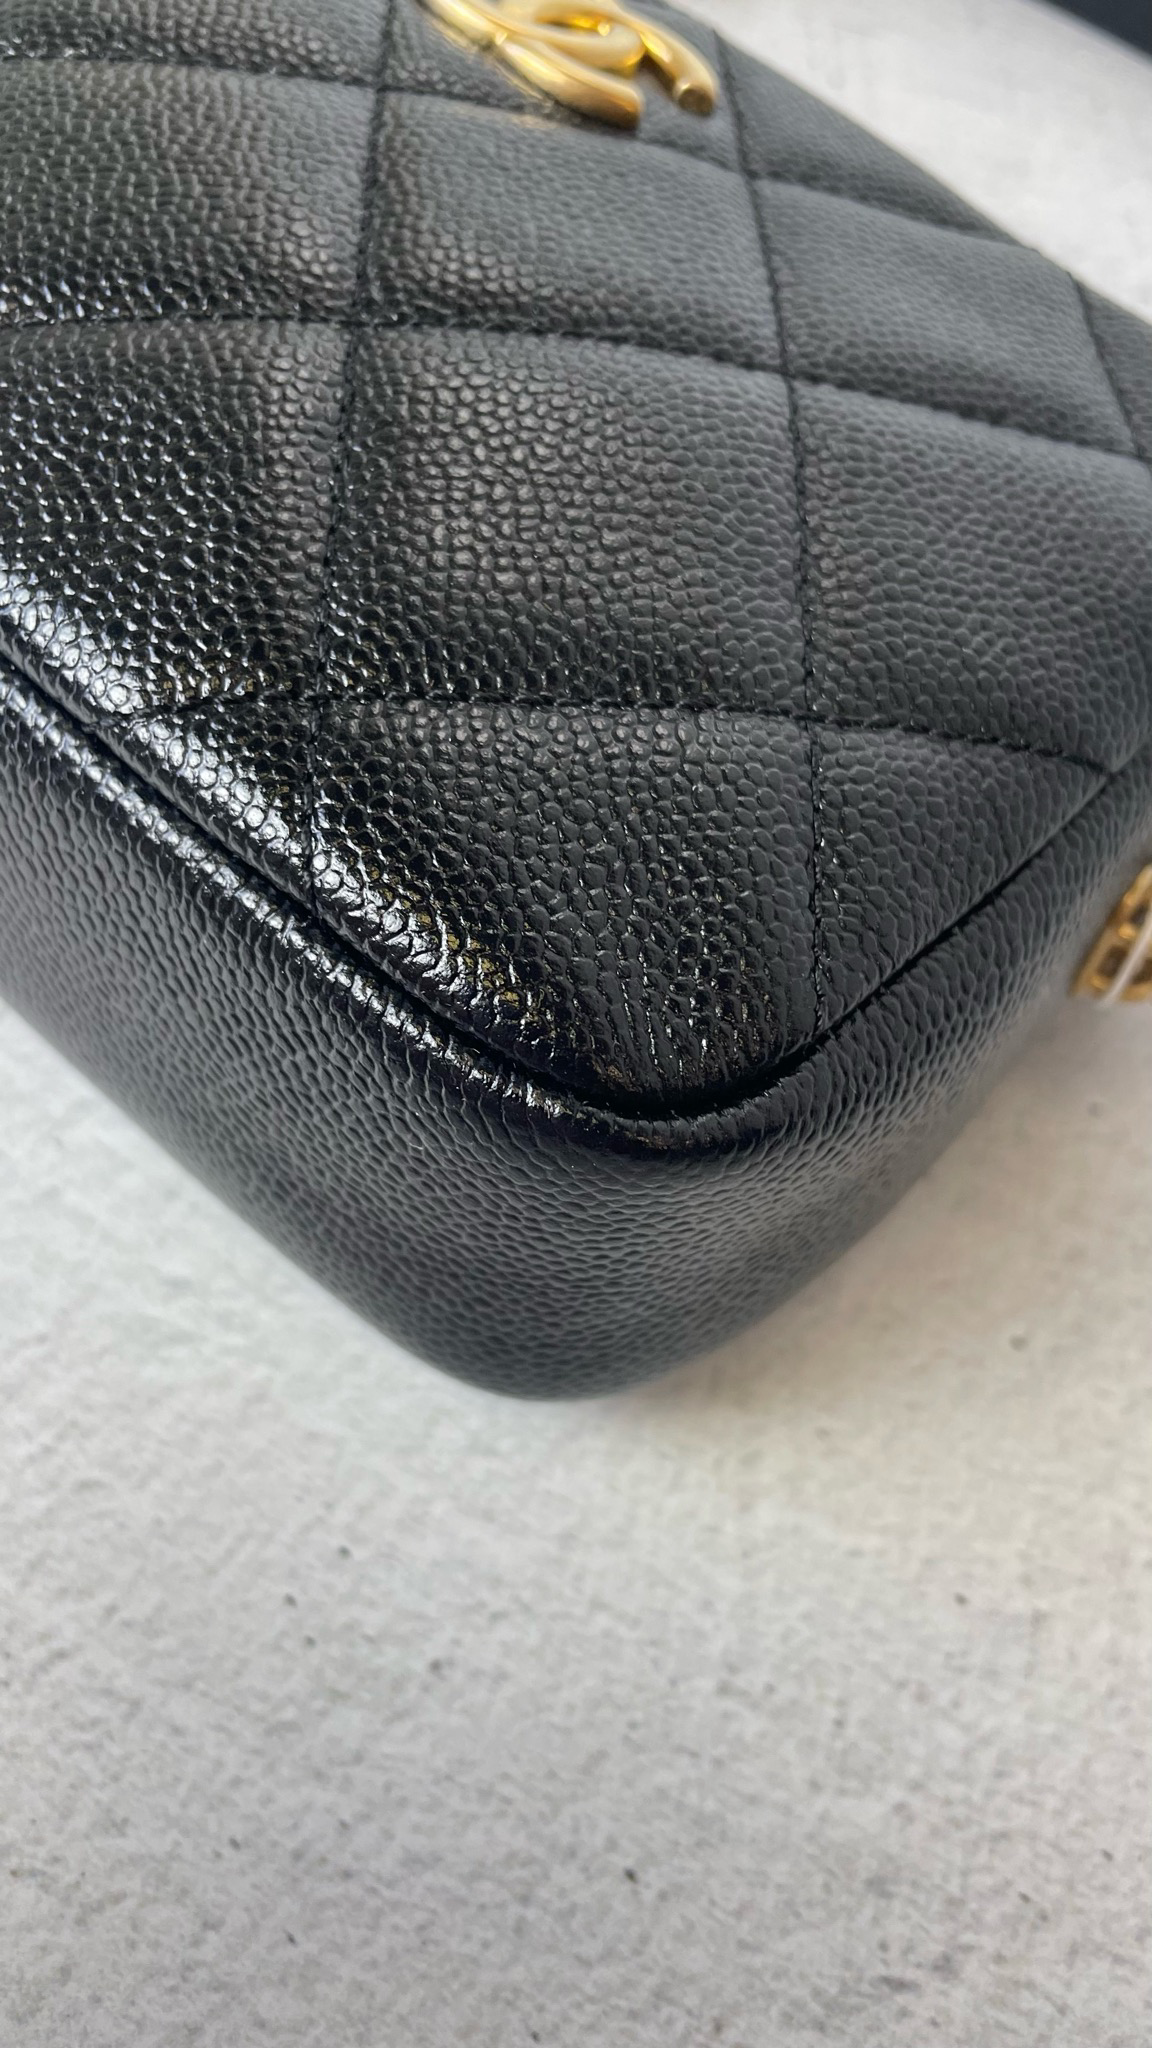 Chanel Melody Camera Bag Mini, Black Caviar with Gold Hardware, Preowned in  Box WA001